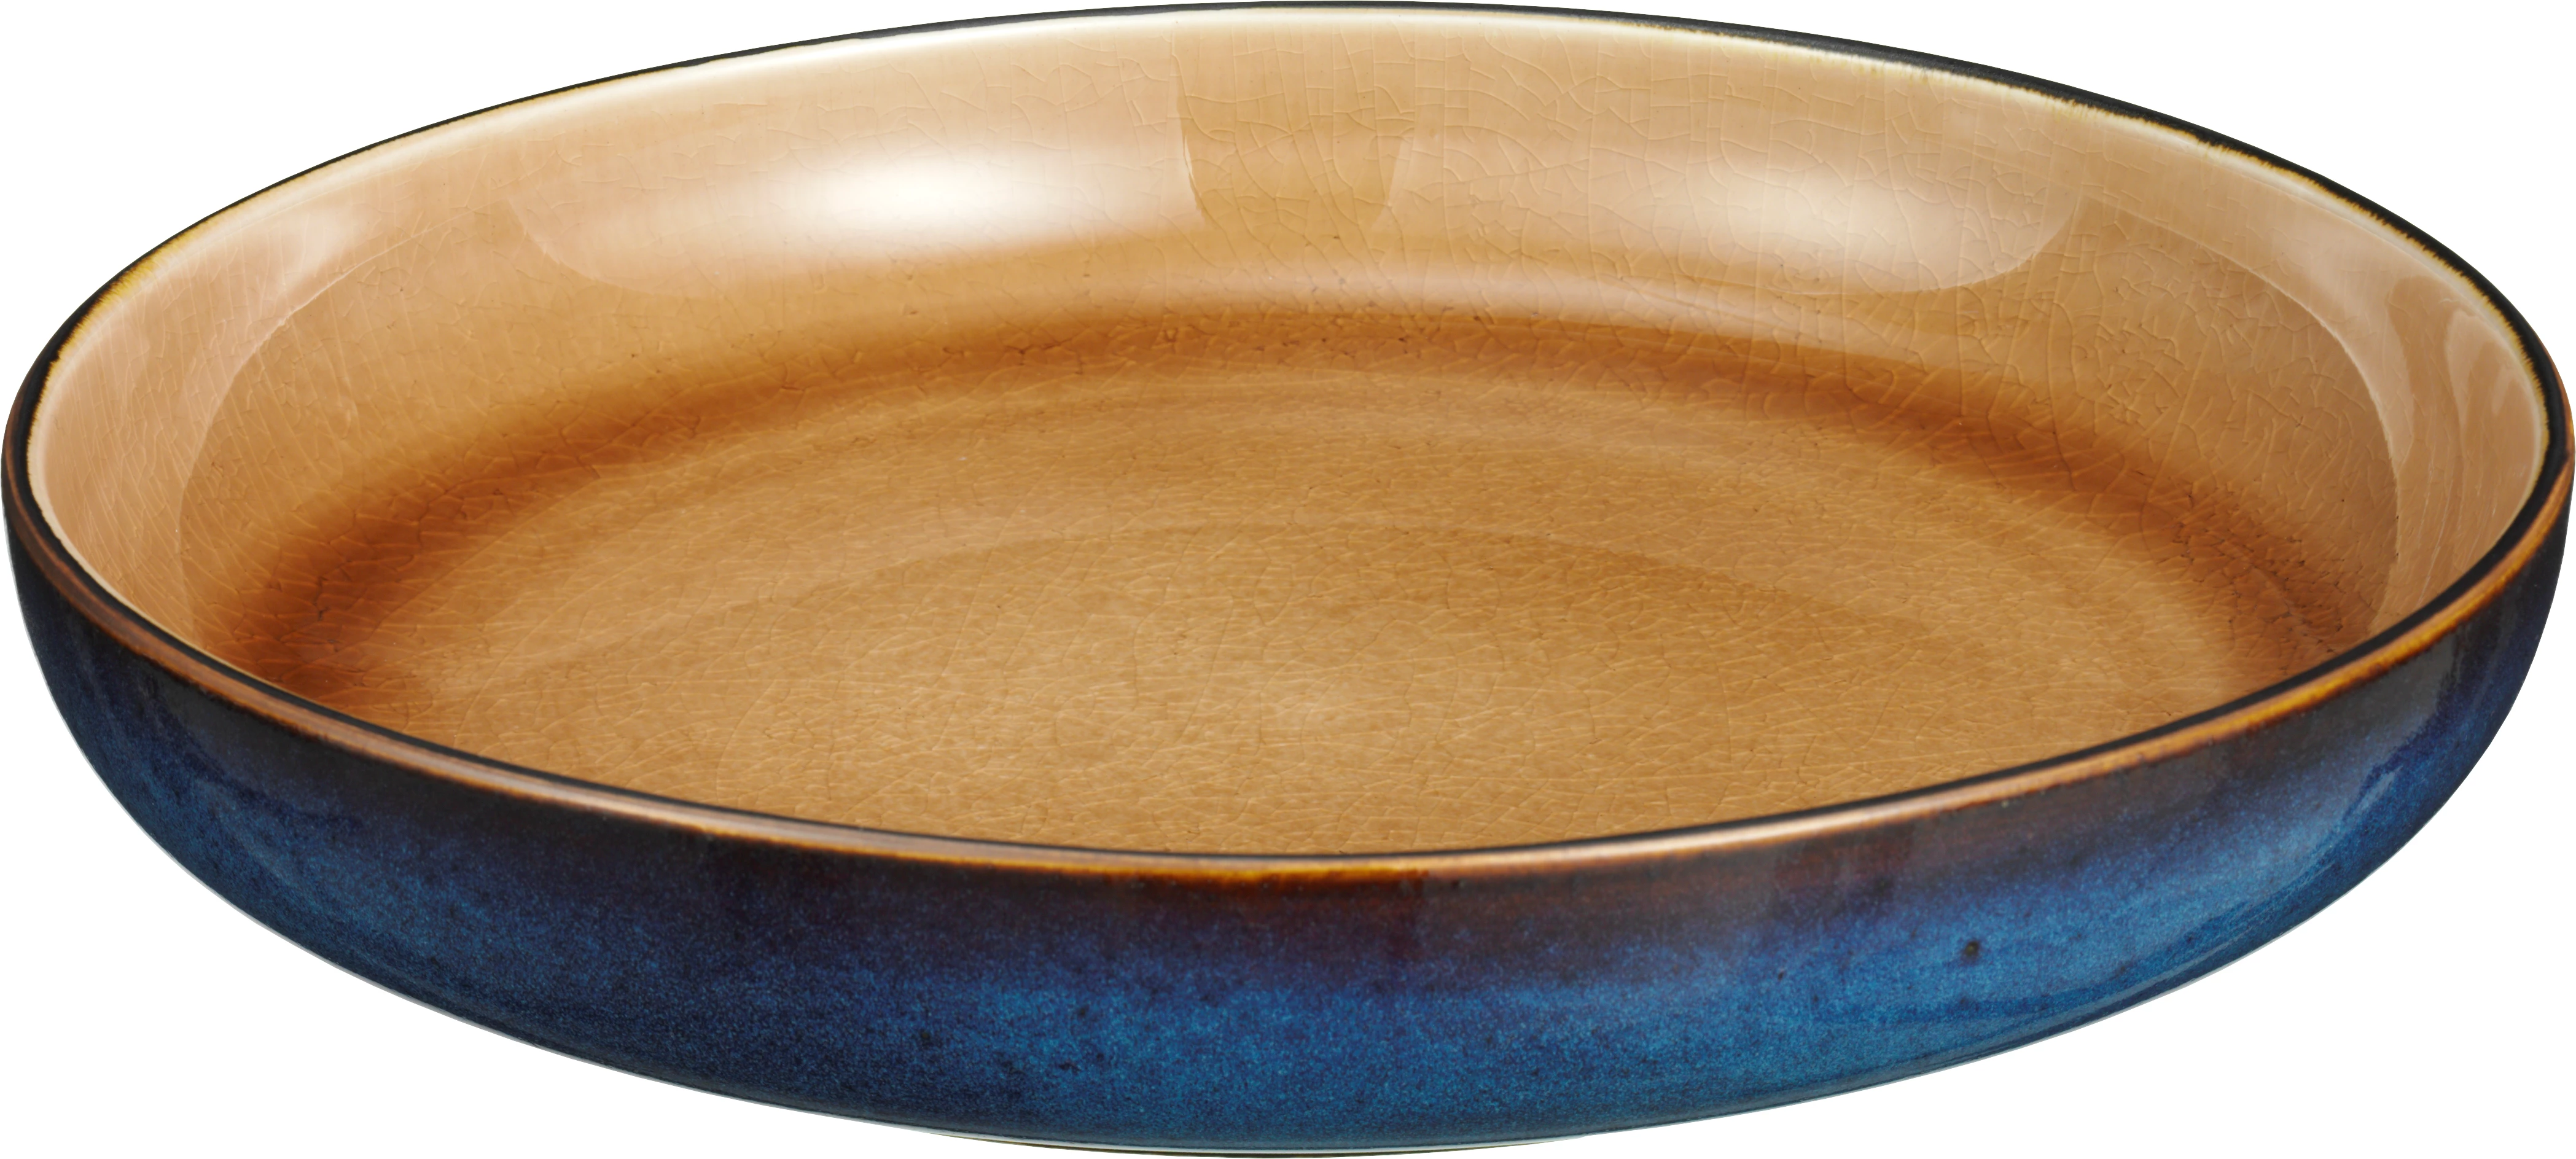 Globe tallerken uden fane, dyb, petrol/brun, ø23 cm